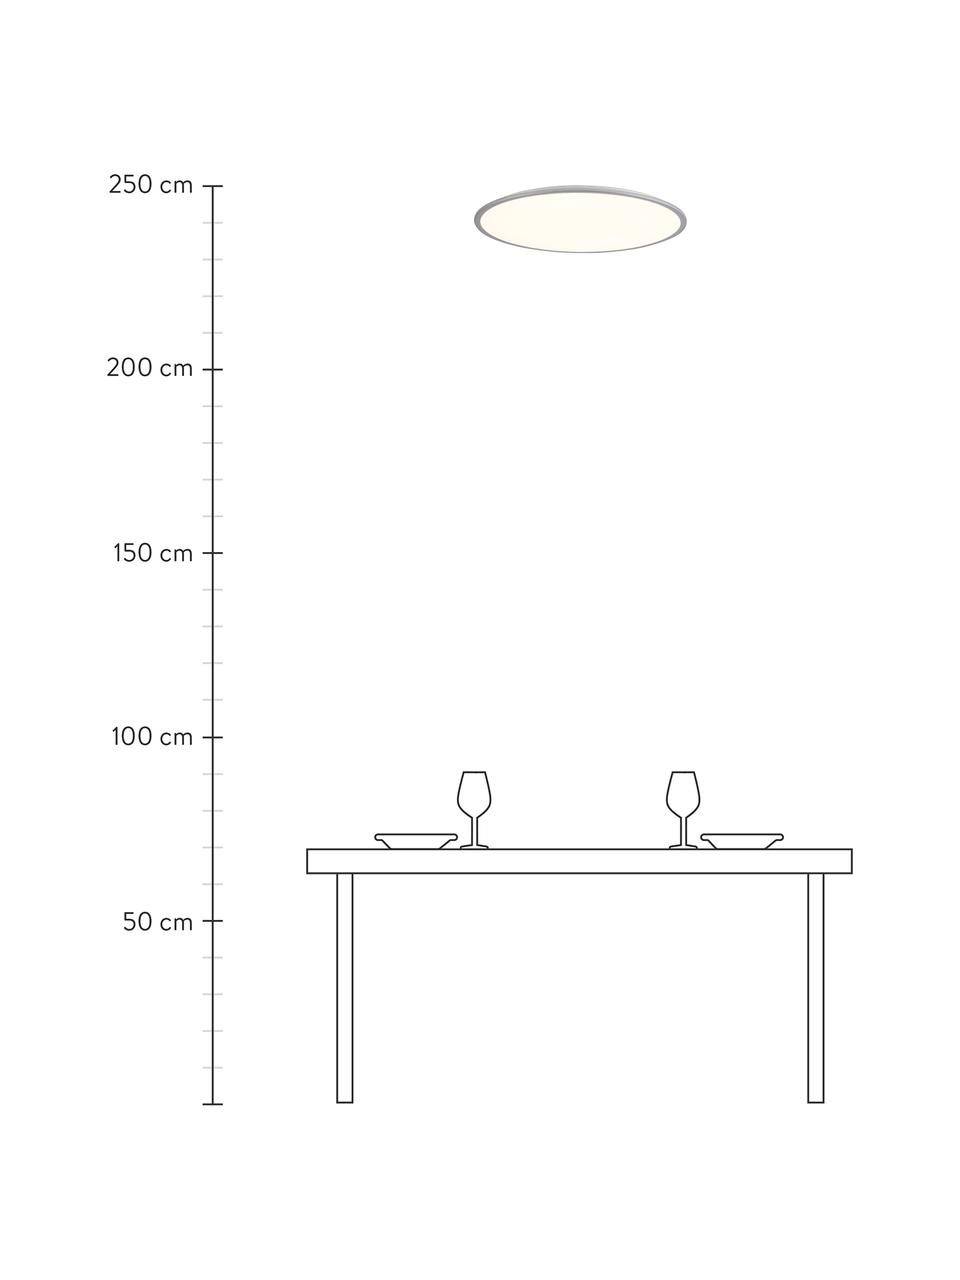 Stmívatelné LED svítidlo s dálkovým ovládáním Jamil, Bílá, stříbrná, Ø 58 cm, V 9 cm